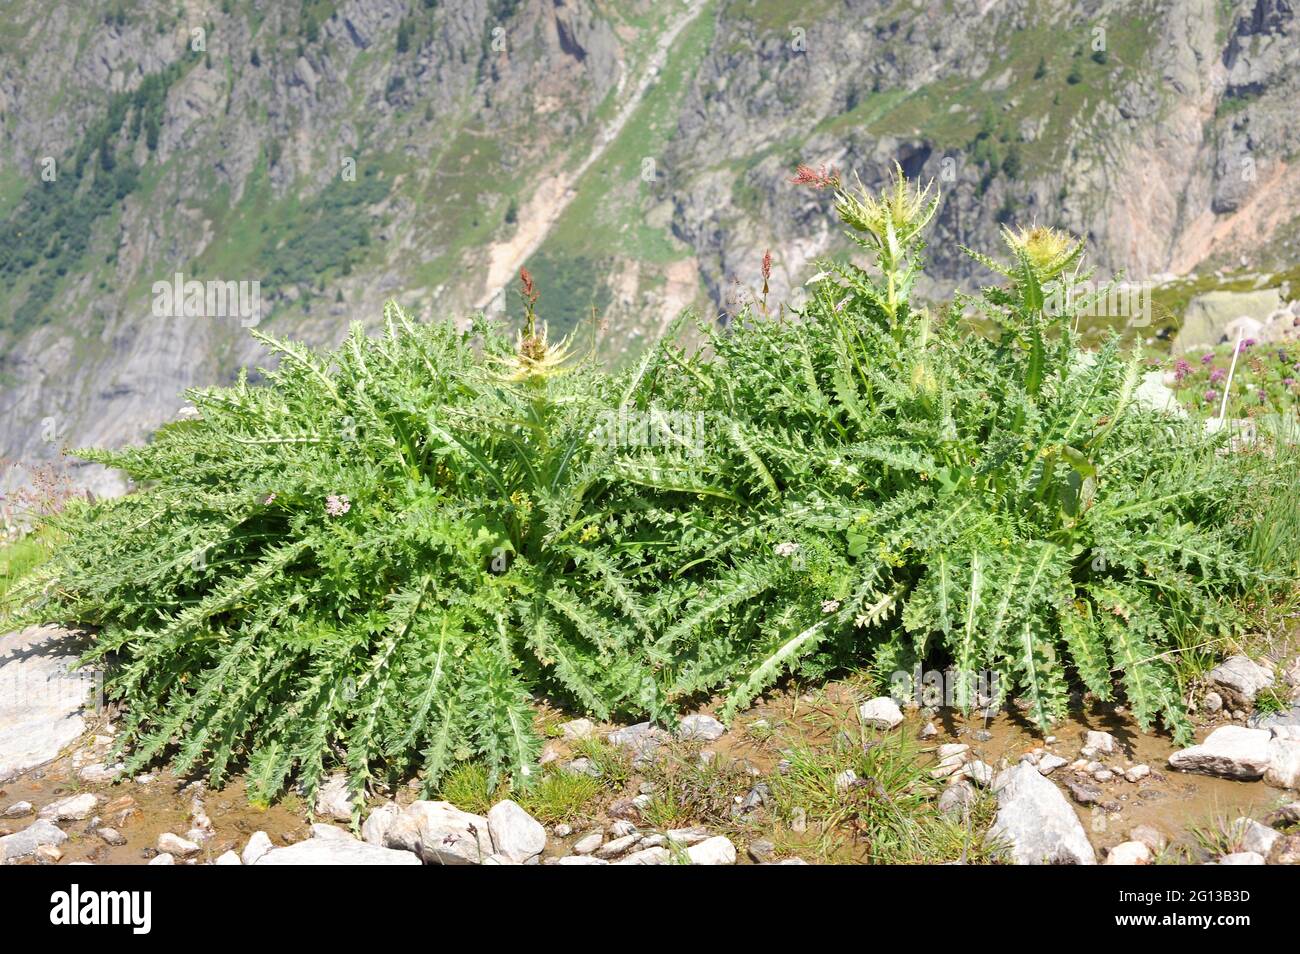 Spiniest thistle (Cirsium spinosissimum) es una planta perenne espinosa nativa de los Alpes y los Balcanes. Esta foto fue tomada en los Alpes franceses, cerca de Chamonix. Foto de stock